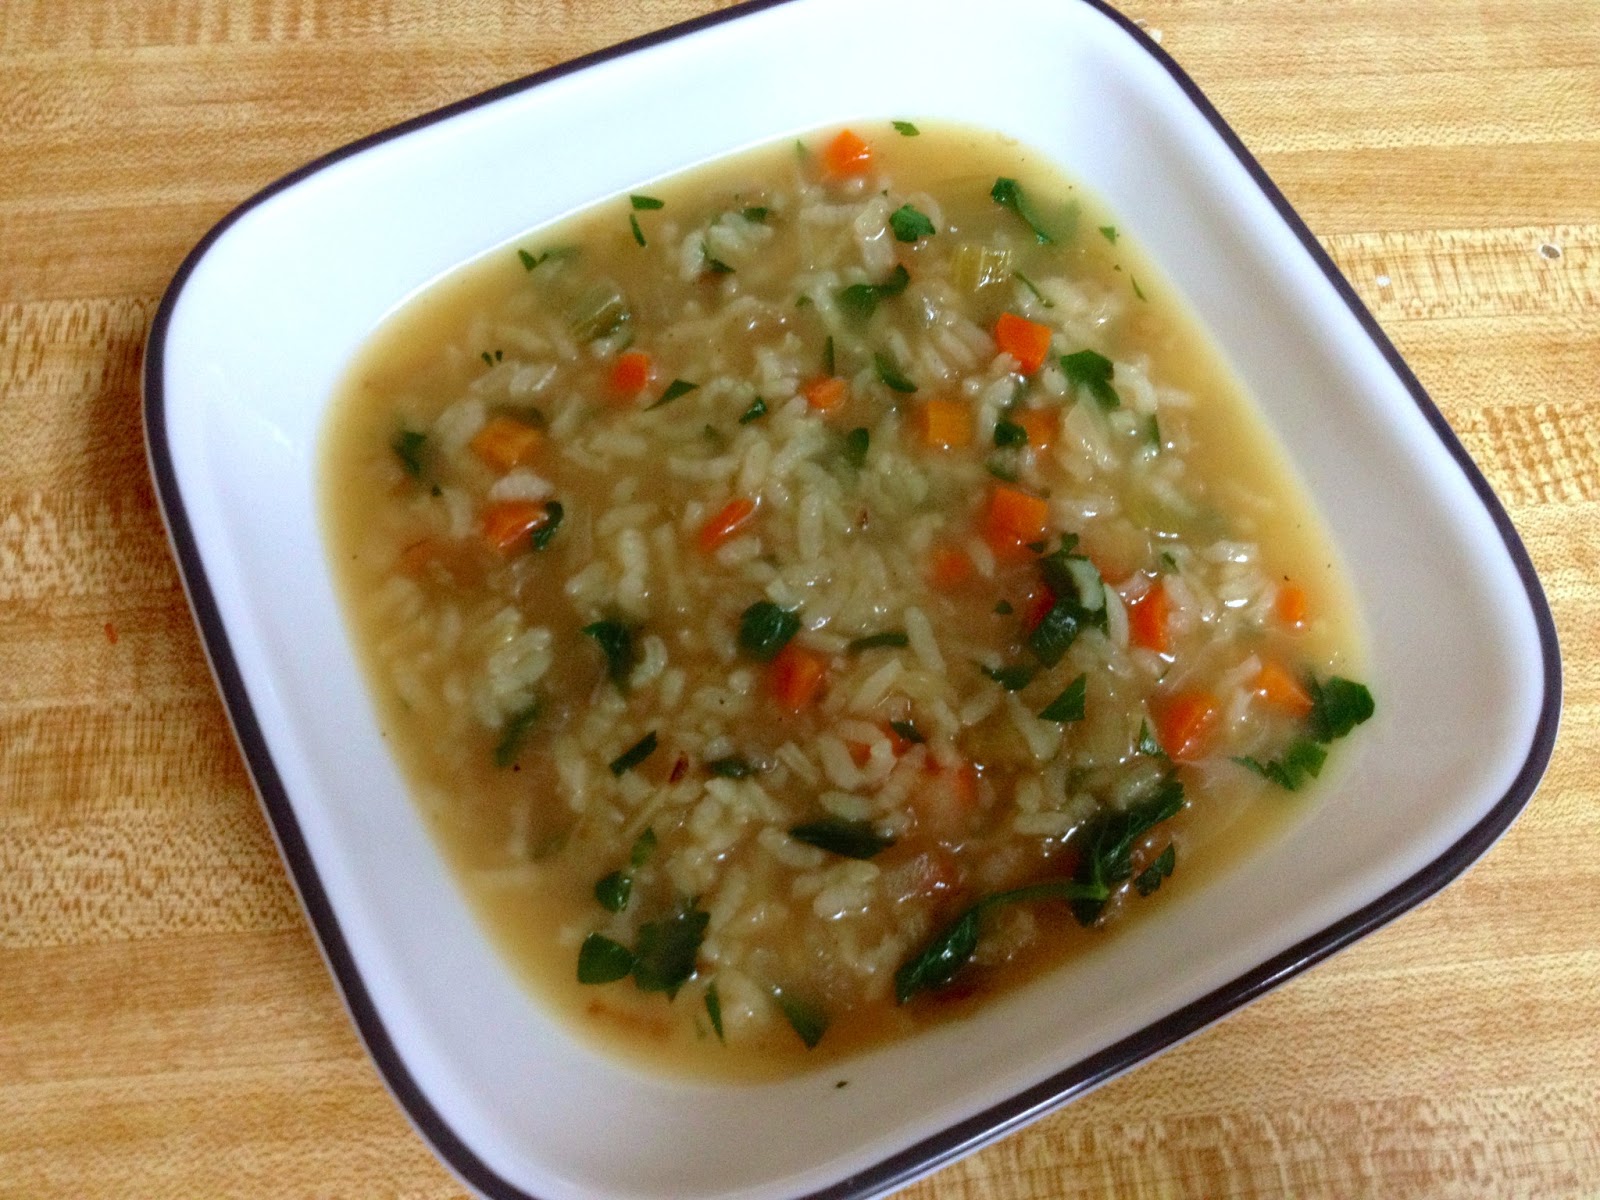 del mar y mas: Parsley and Rice Soup